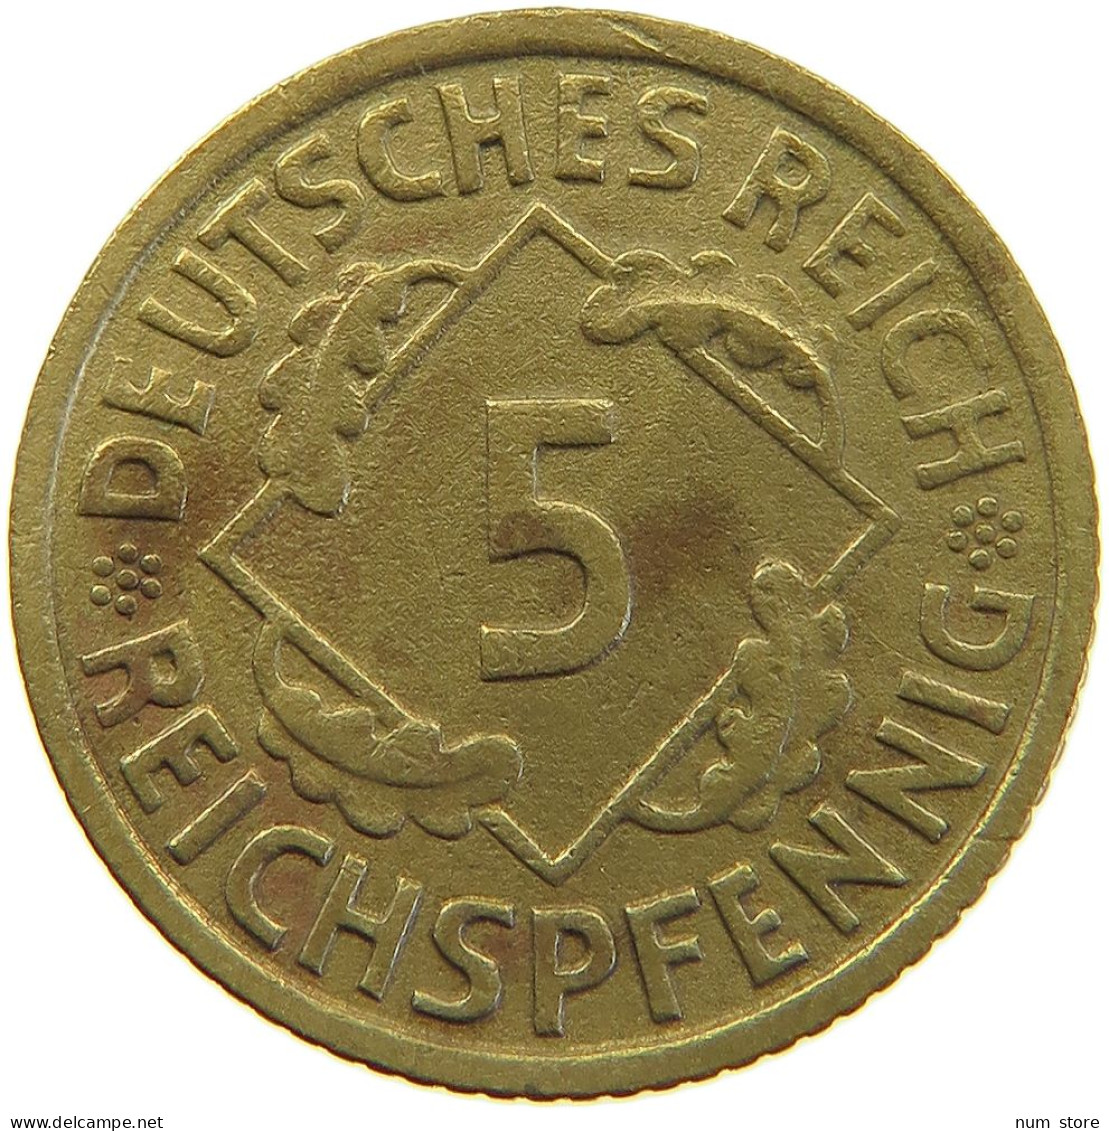 GERMANY 5 PFENNIG 1935 F #a055 0453 - 5 Reichspfennig